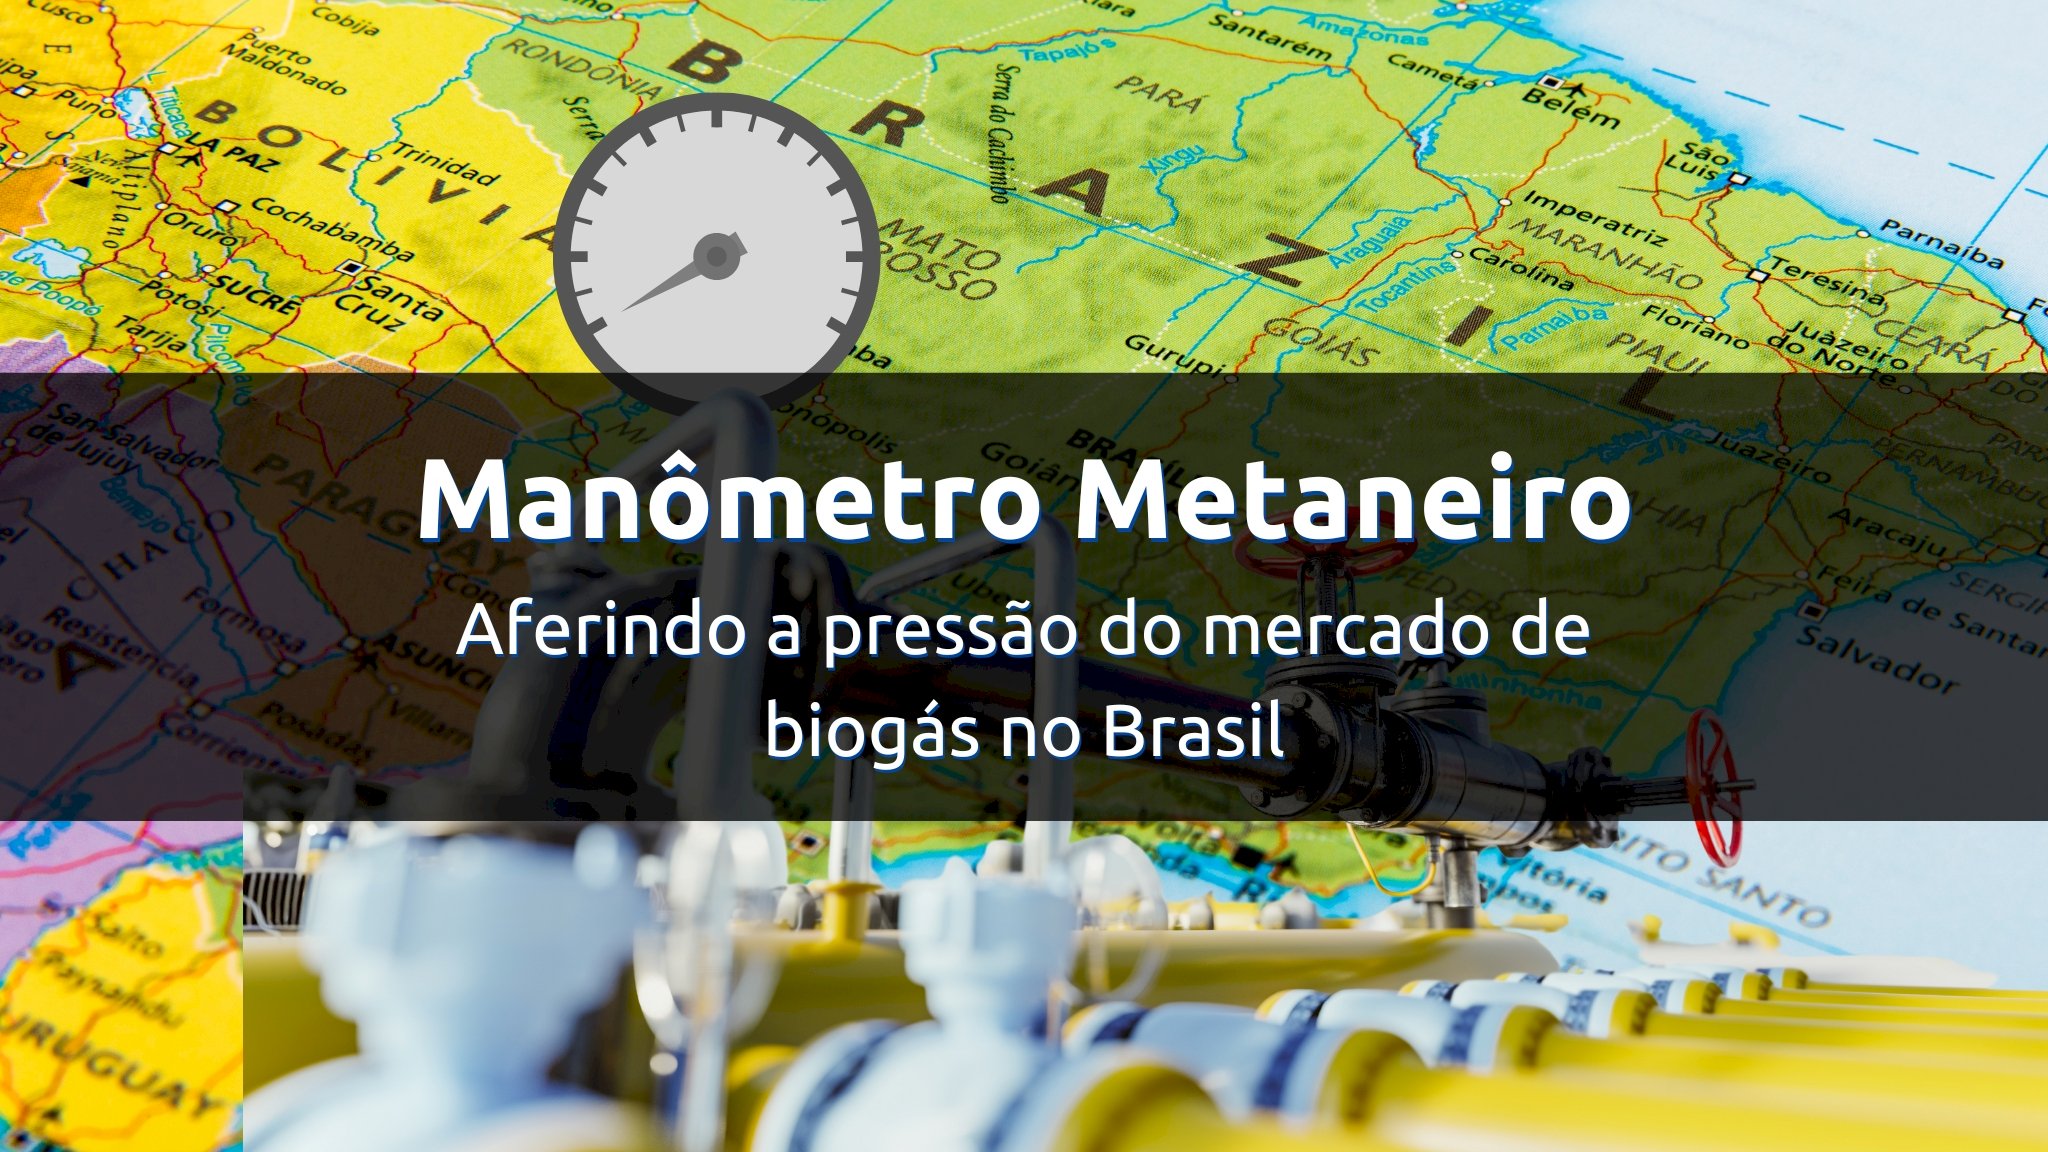 Manômetro Metaneiro - Mercado do Biogás